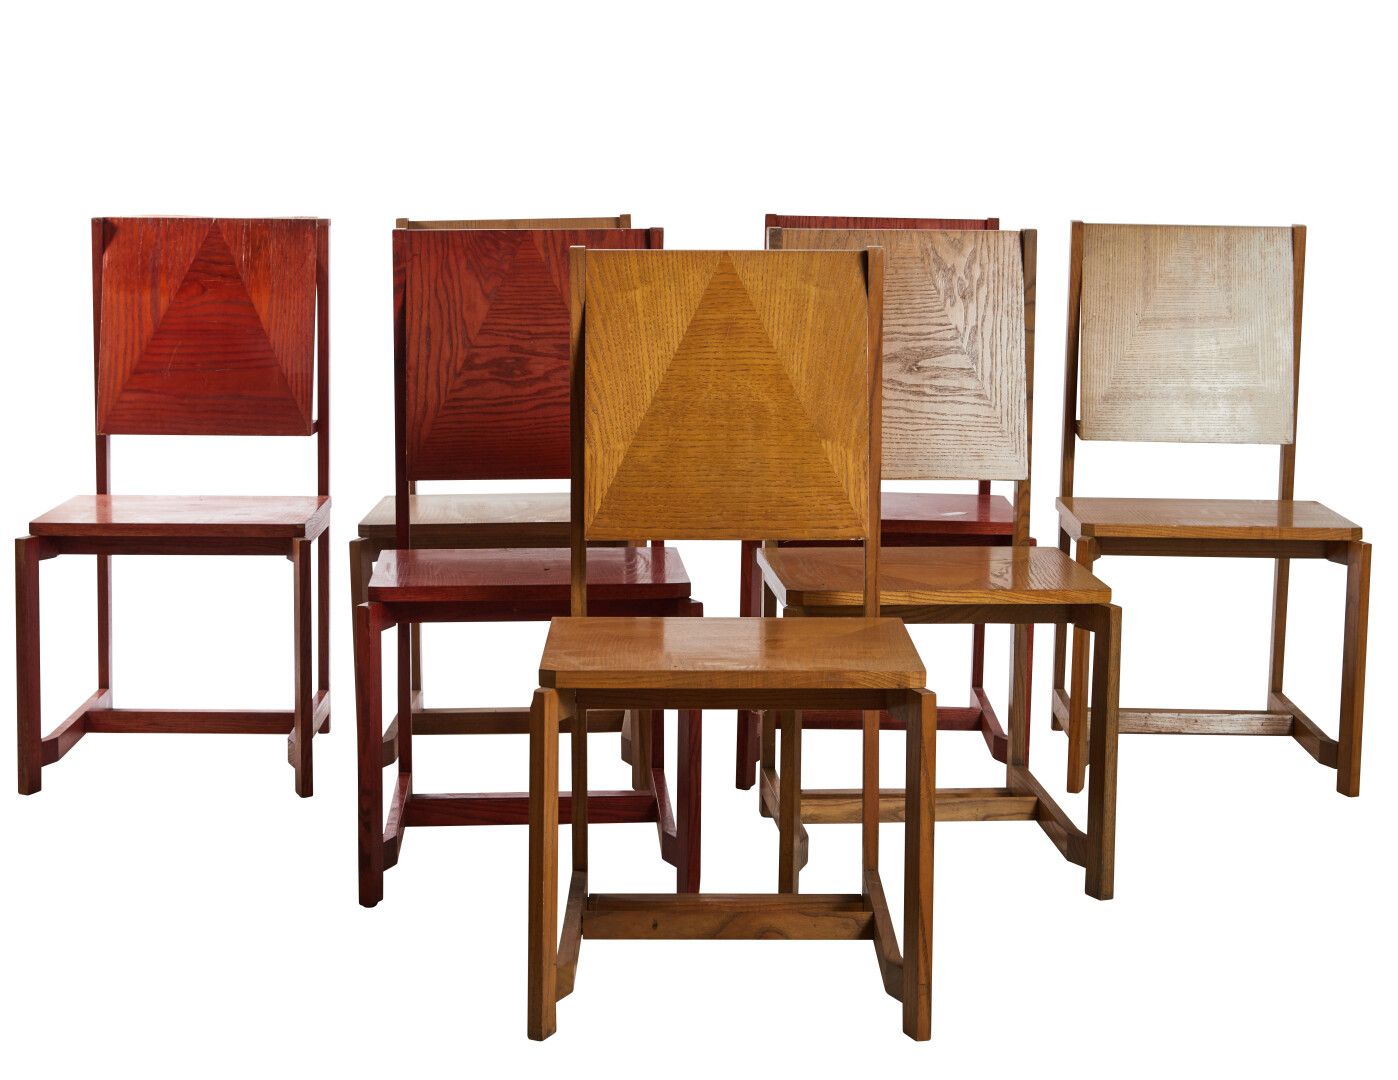 Null Philippe PARENT 

7 Stühle aus massiver Esche: 4 naturbelassen, 3 rot gebei&hellip;